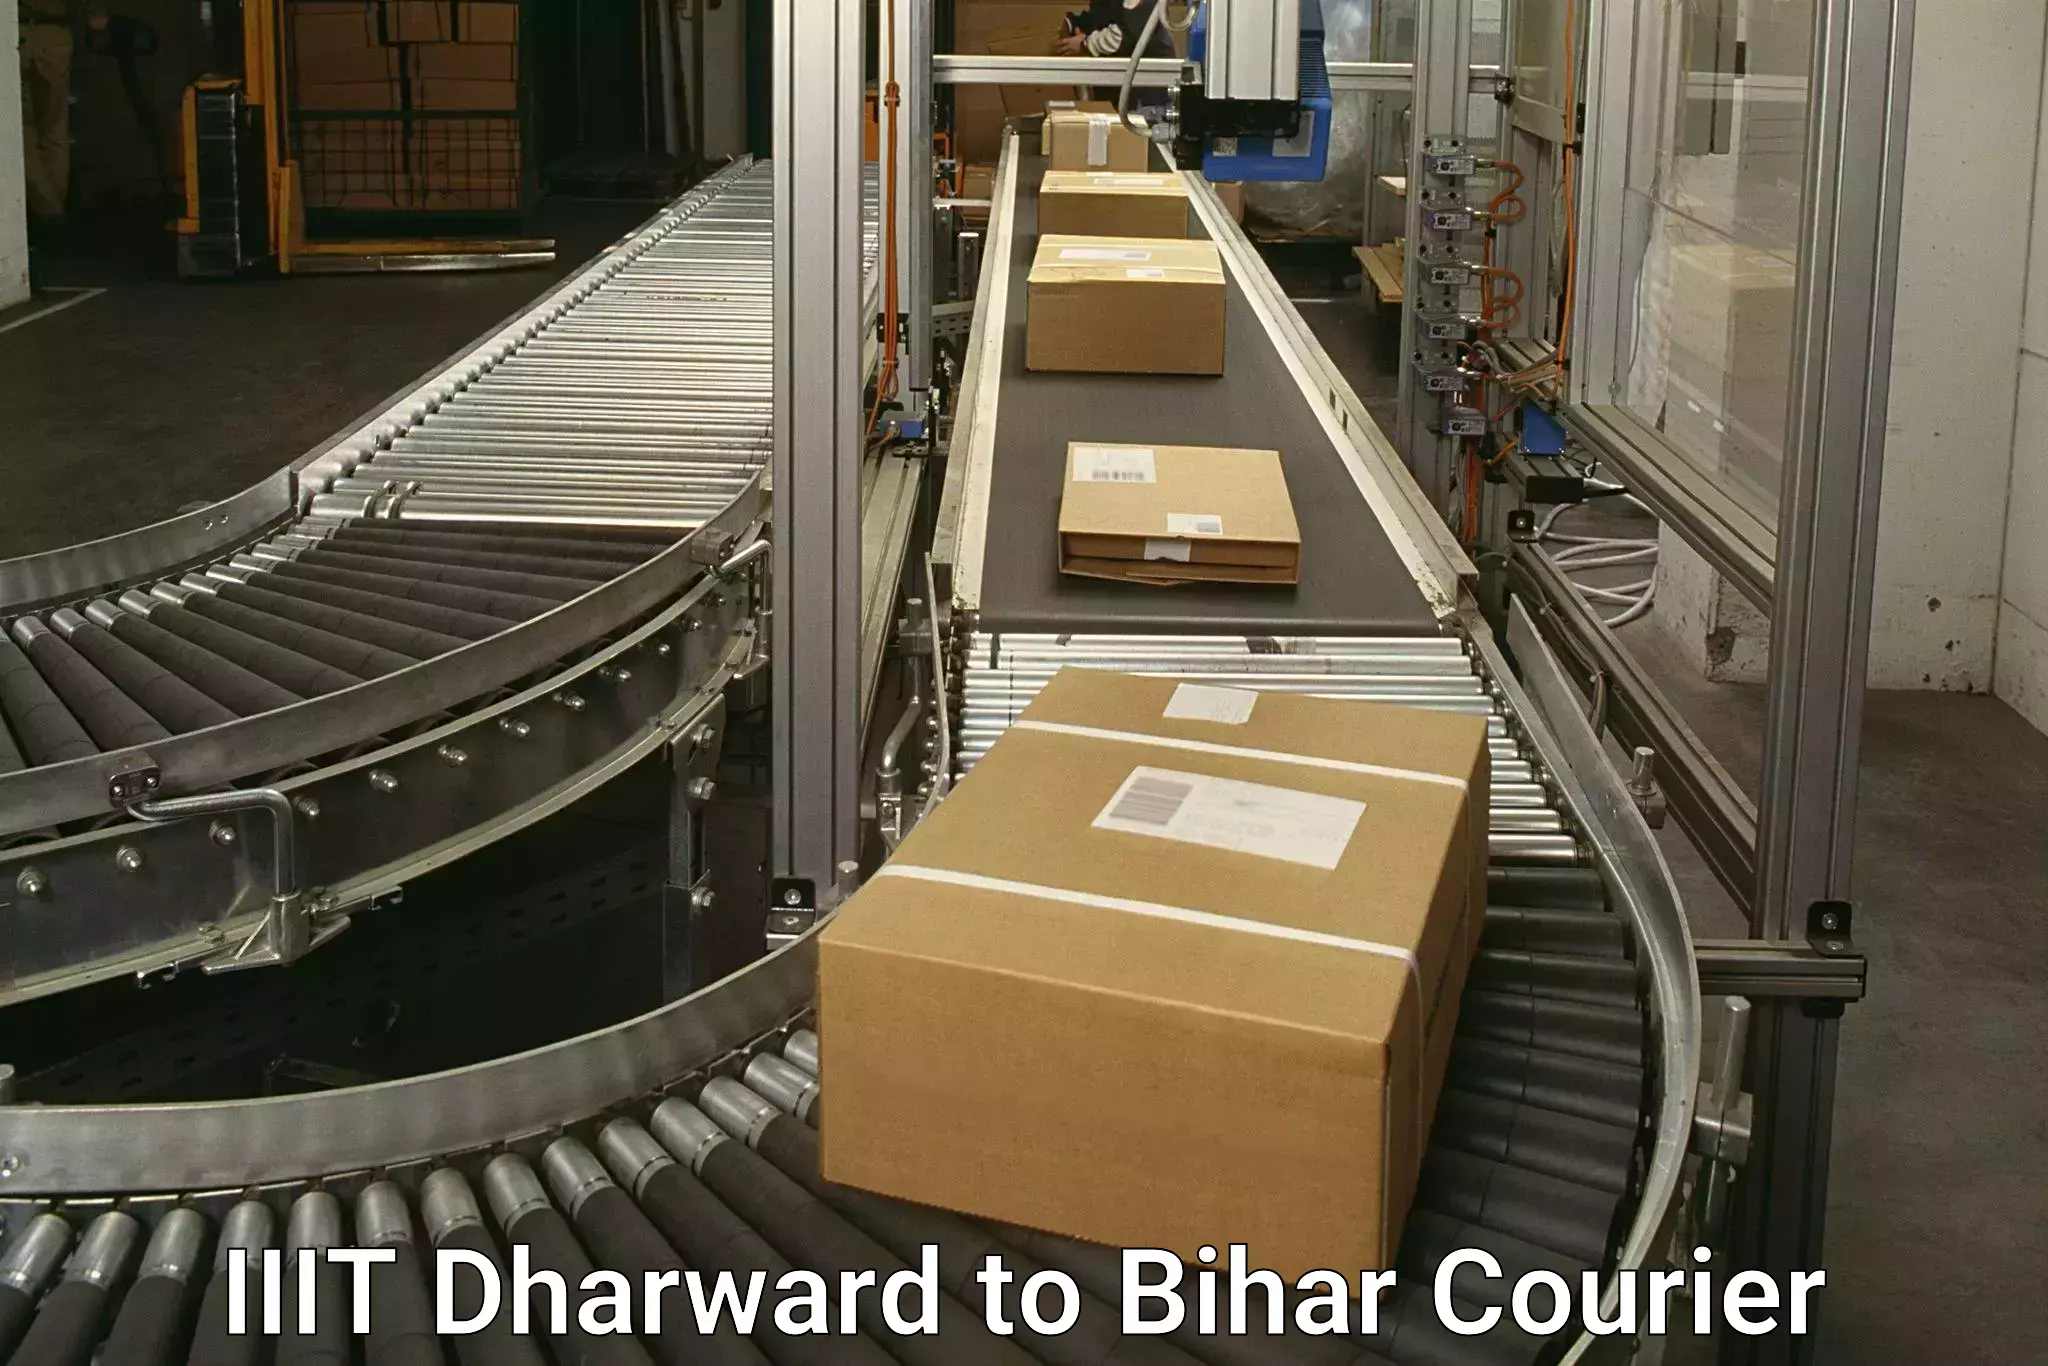 Customer-oriented courier services IIIT Dharward to Bahadurganj